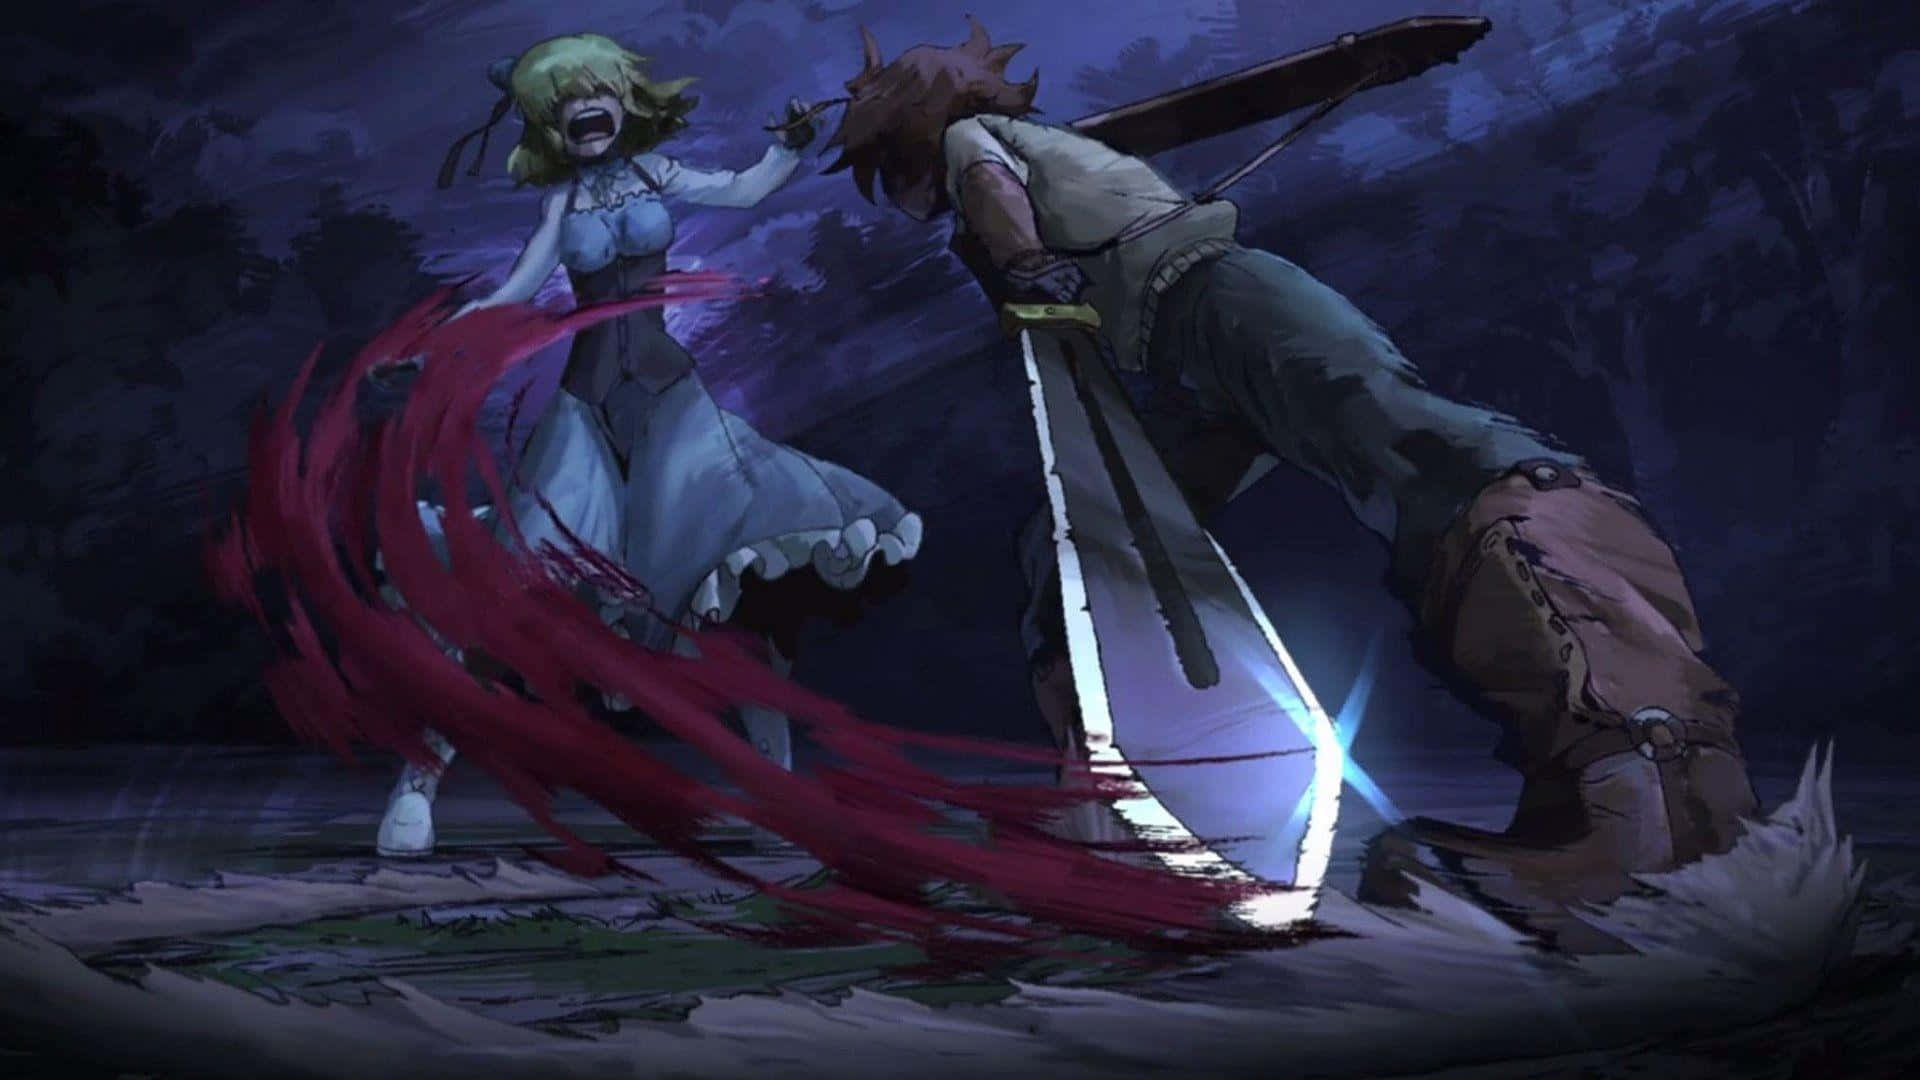 Kämpfefür Gerechtigkeit In Der Dunklen Und Chaotischen Welt Des Animes Akame Ga Kill.